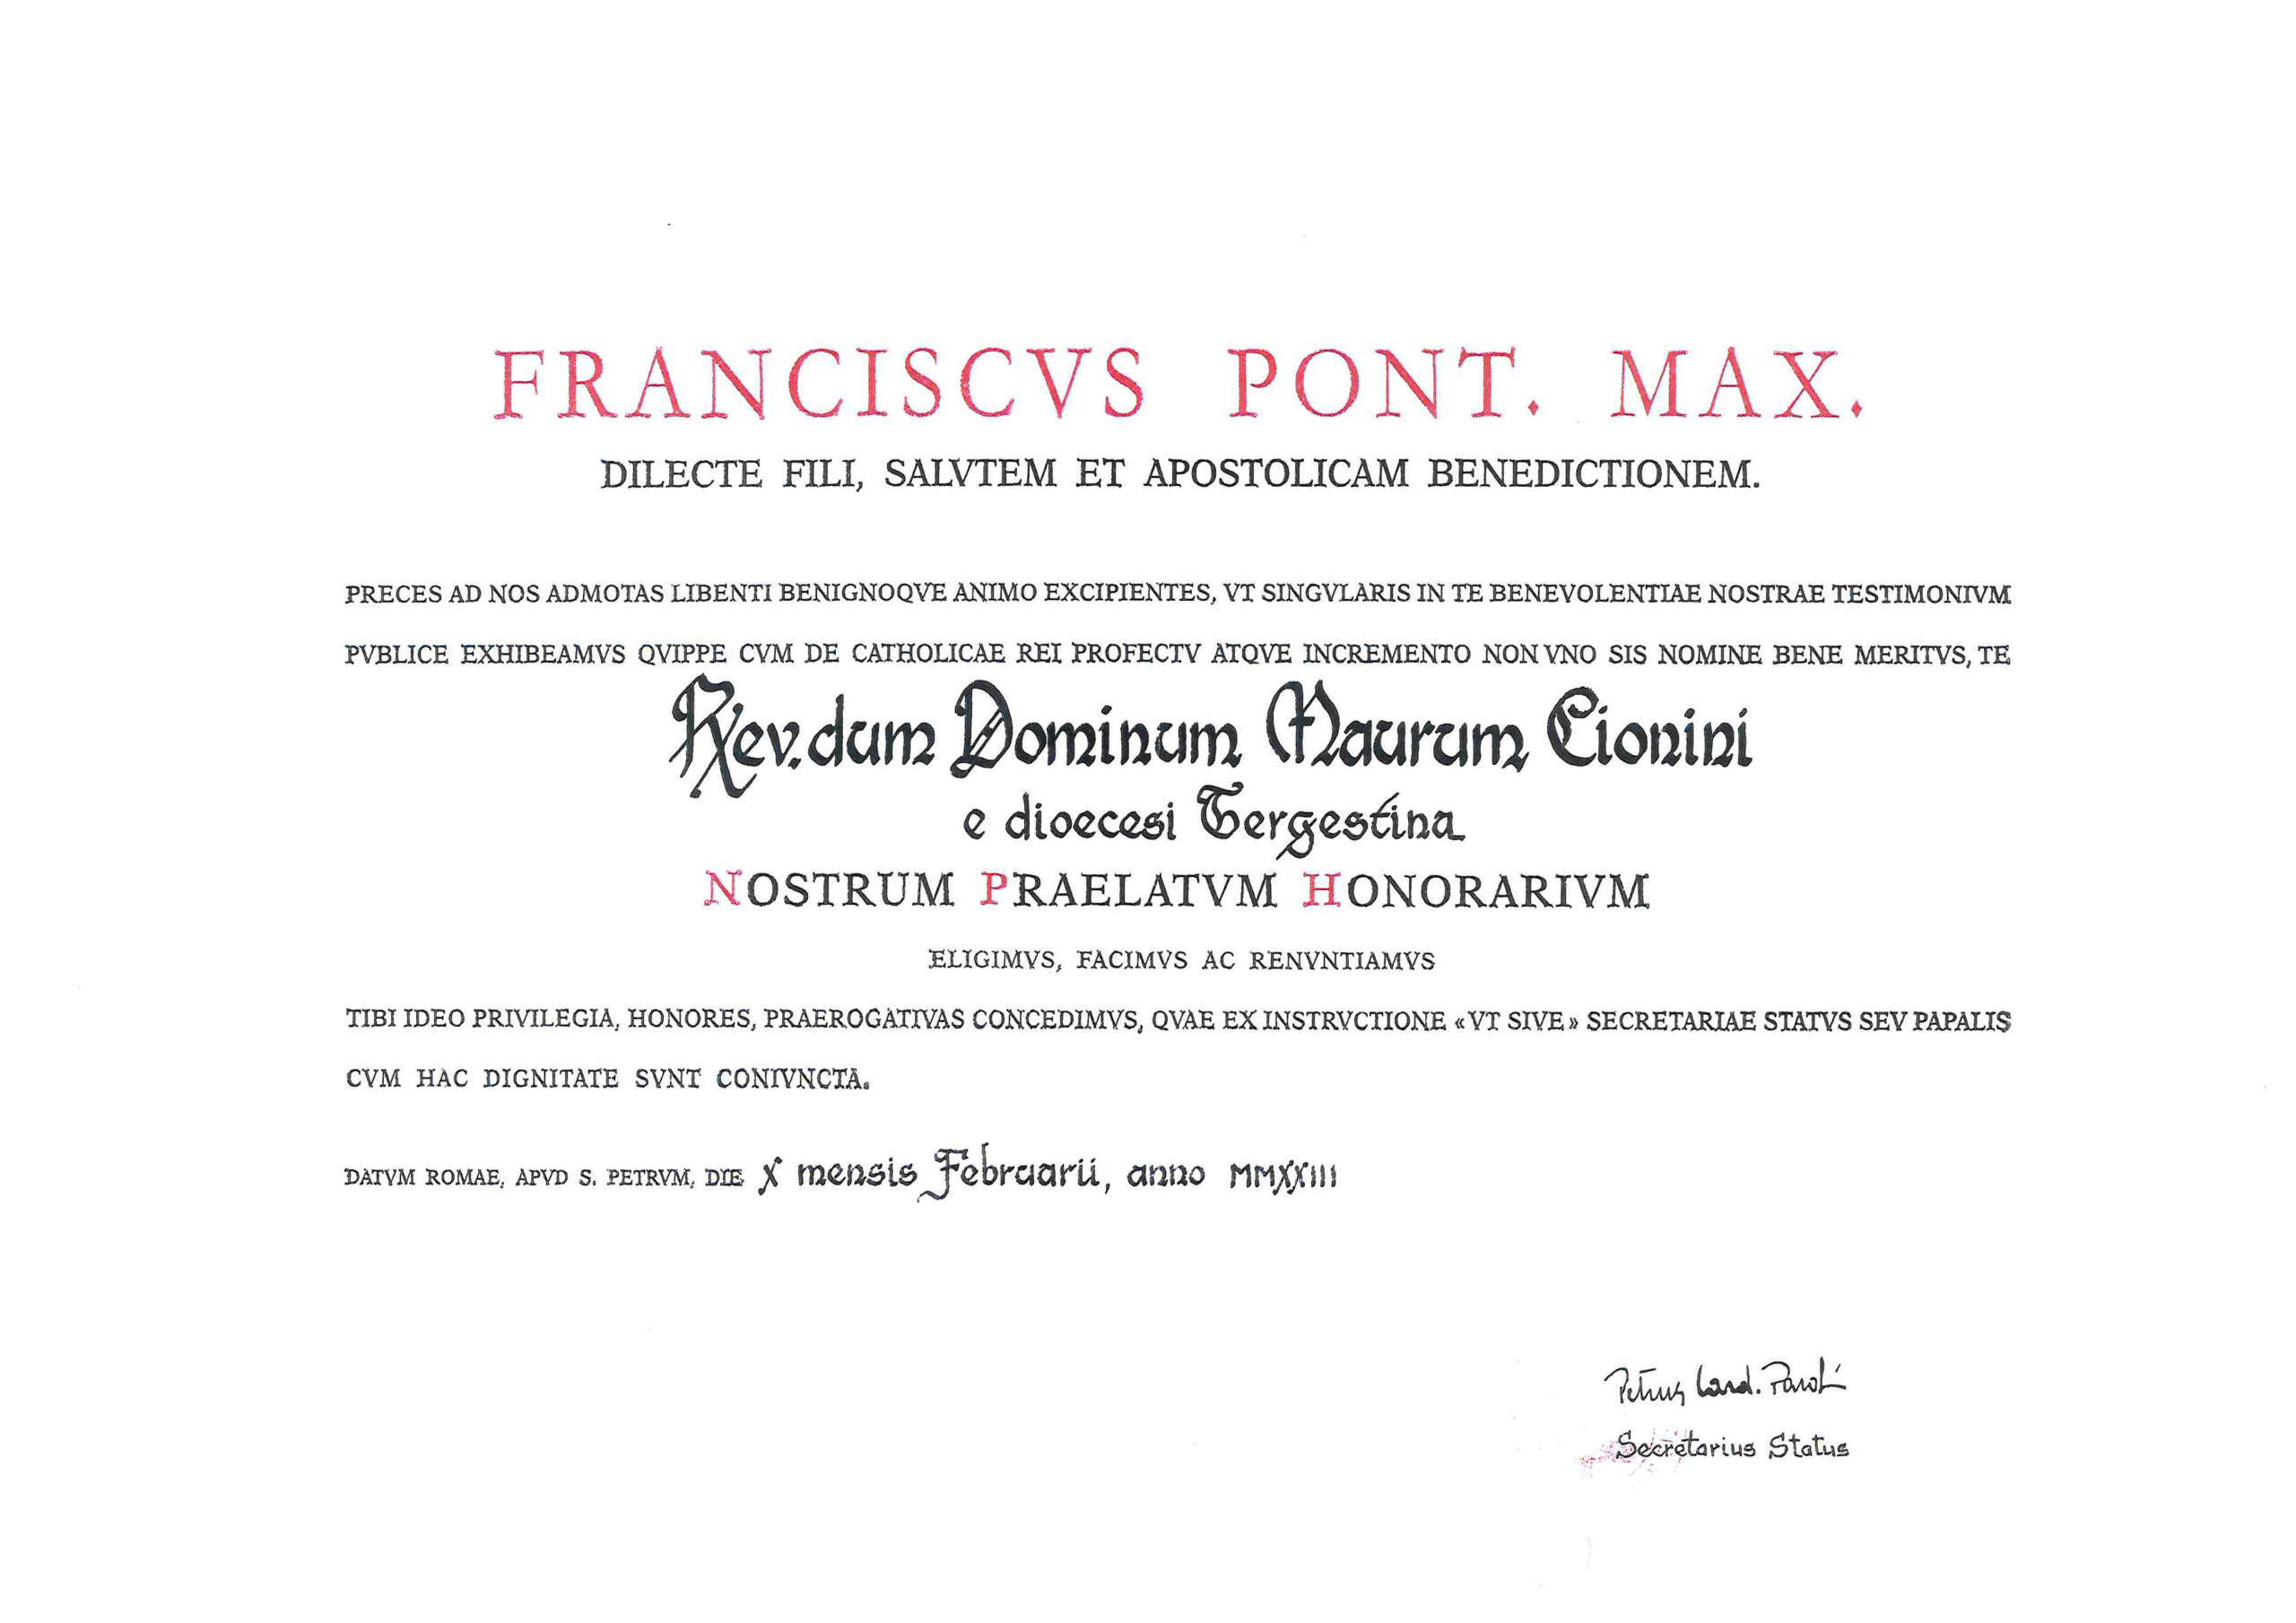 Monsignor Cionini è stato nominato Prelato d’Onore di Sua Santità